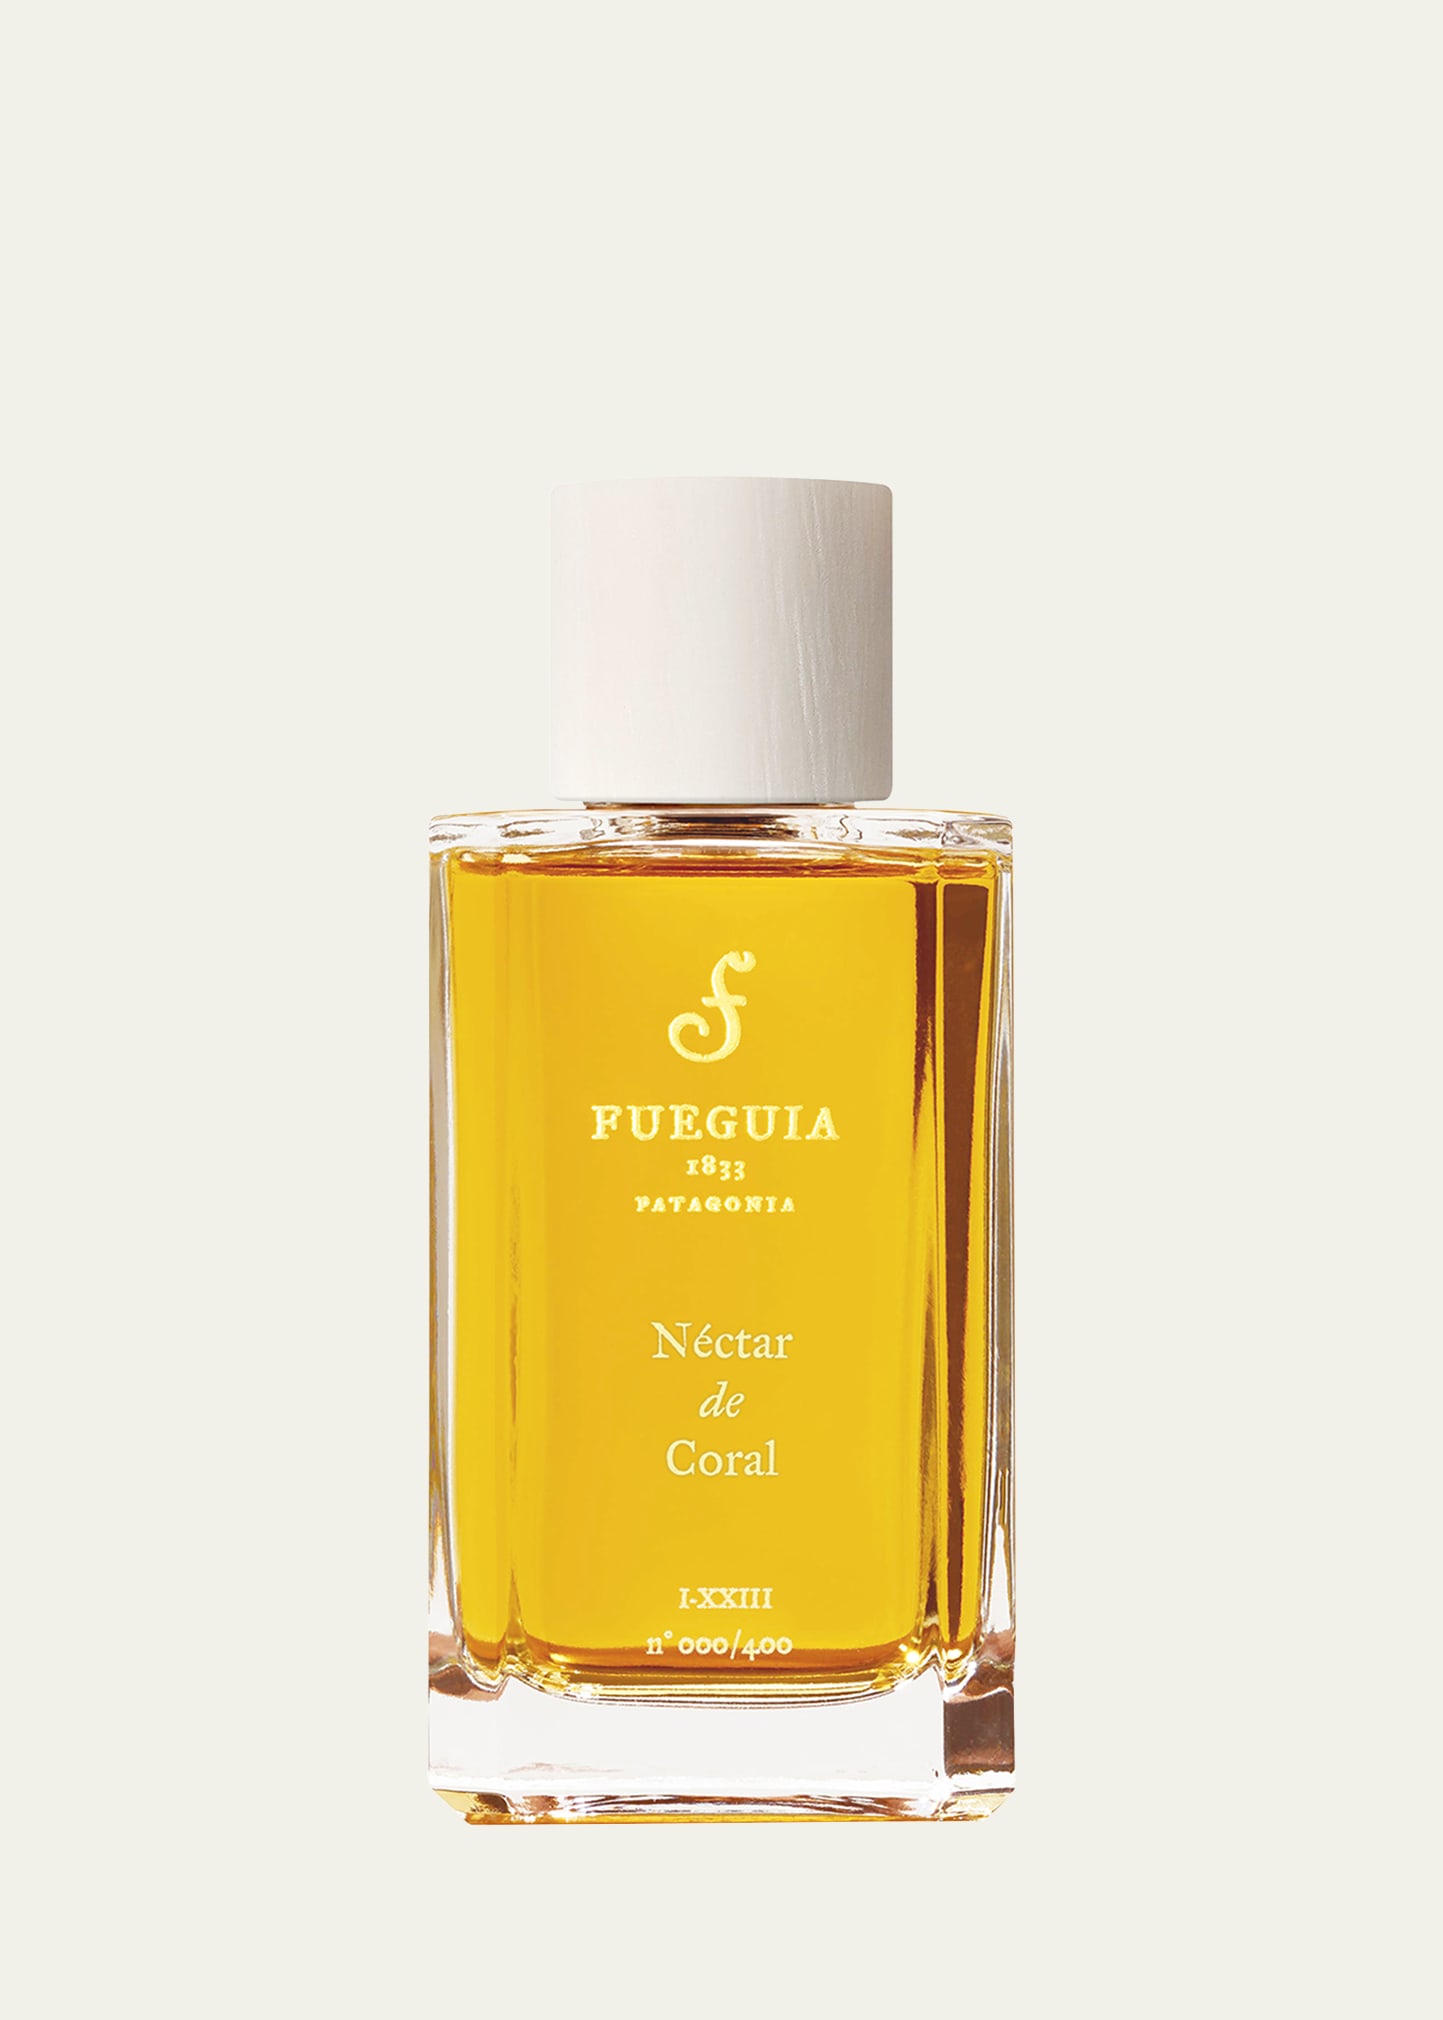 Nectar de Coral Perfume, 3.4 oz.